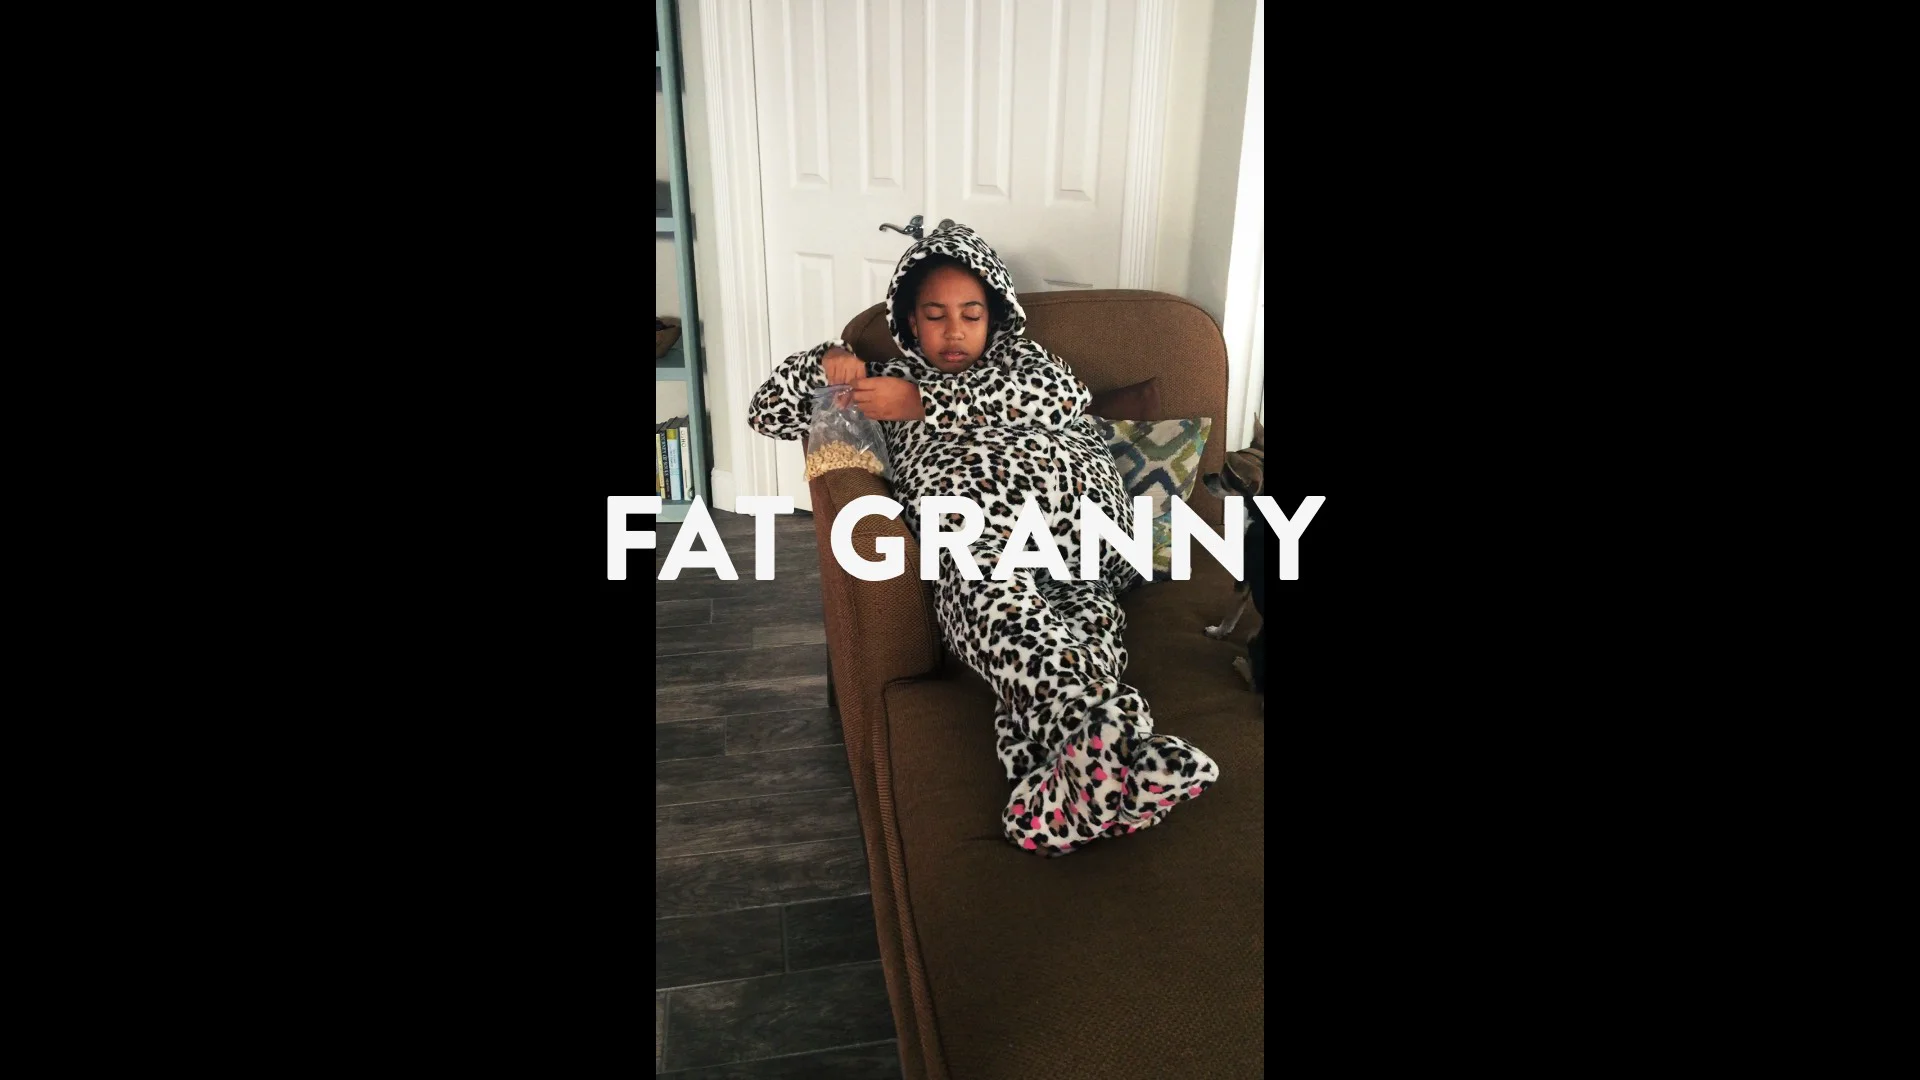 collin harrington recommends Fat Grannies Tumblr